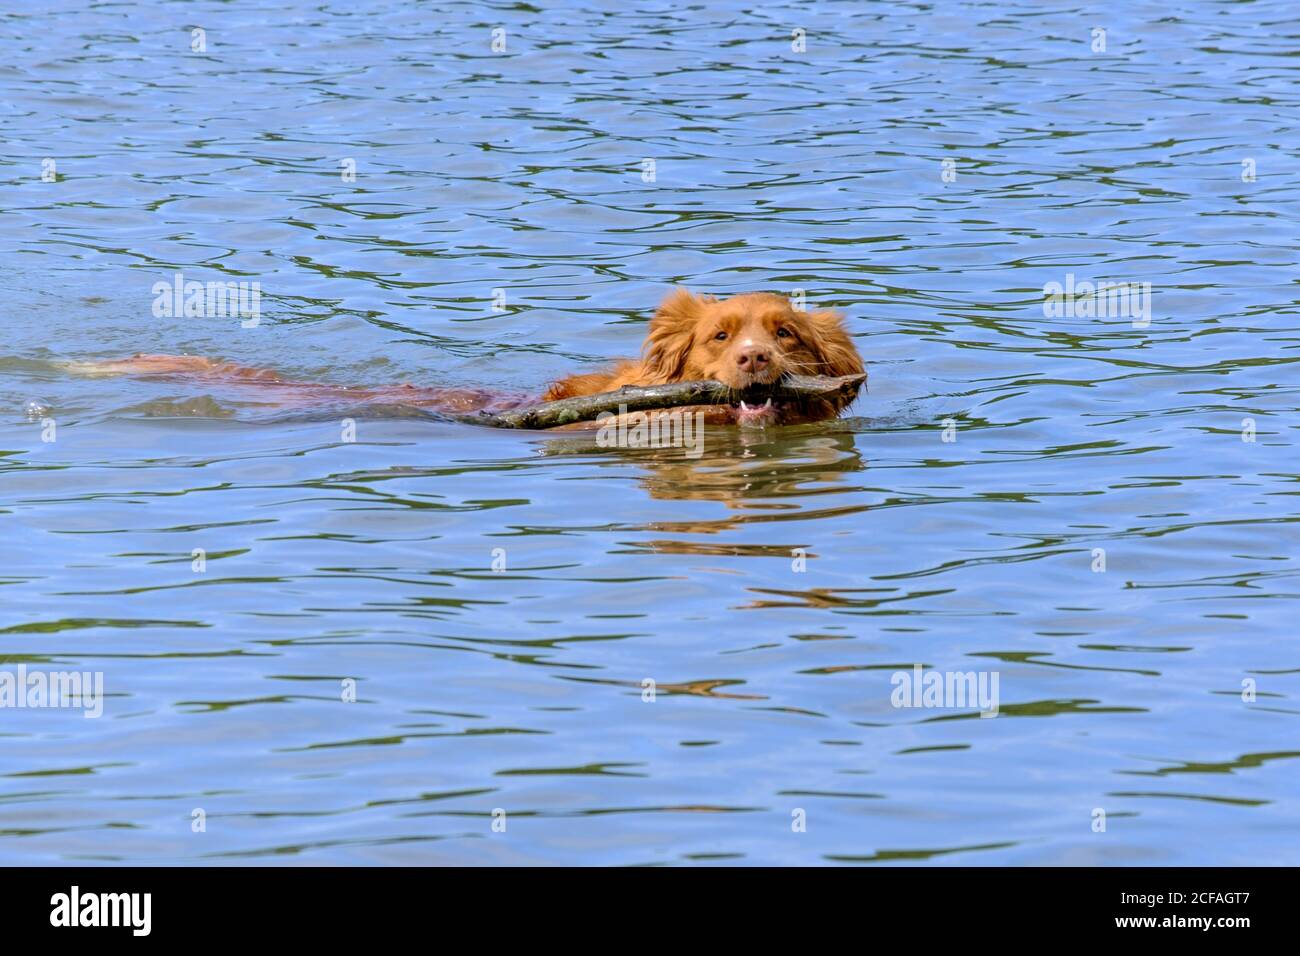 Chien Golden Retriever nageant dans l'eau avec un bâton dans sa bouche. Plage pour chiens, Ruislip Lido, Hillingdon, nord-ouest de Londres. Banque D'Images